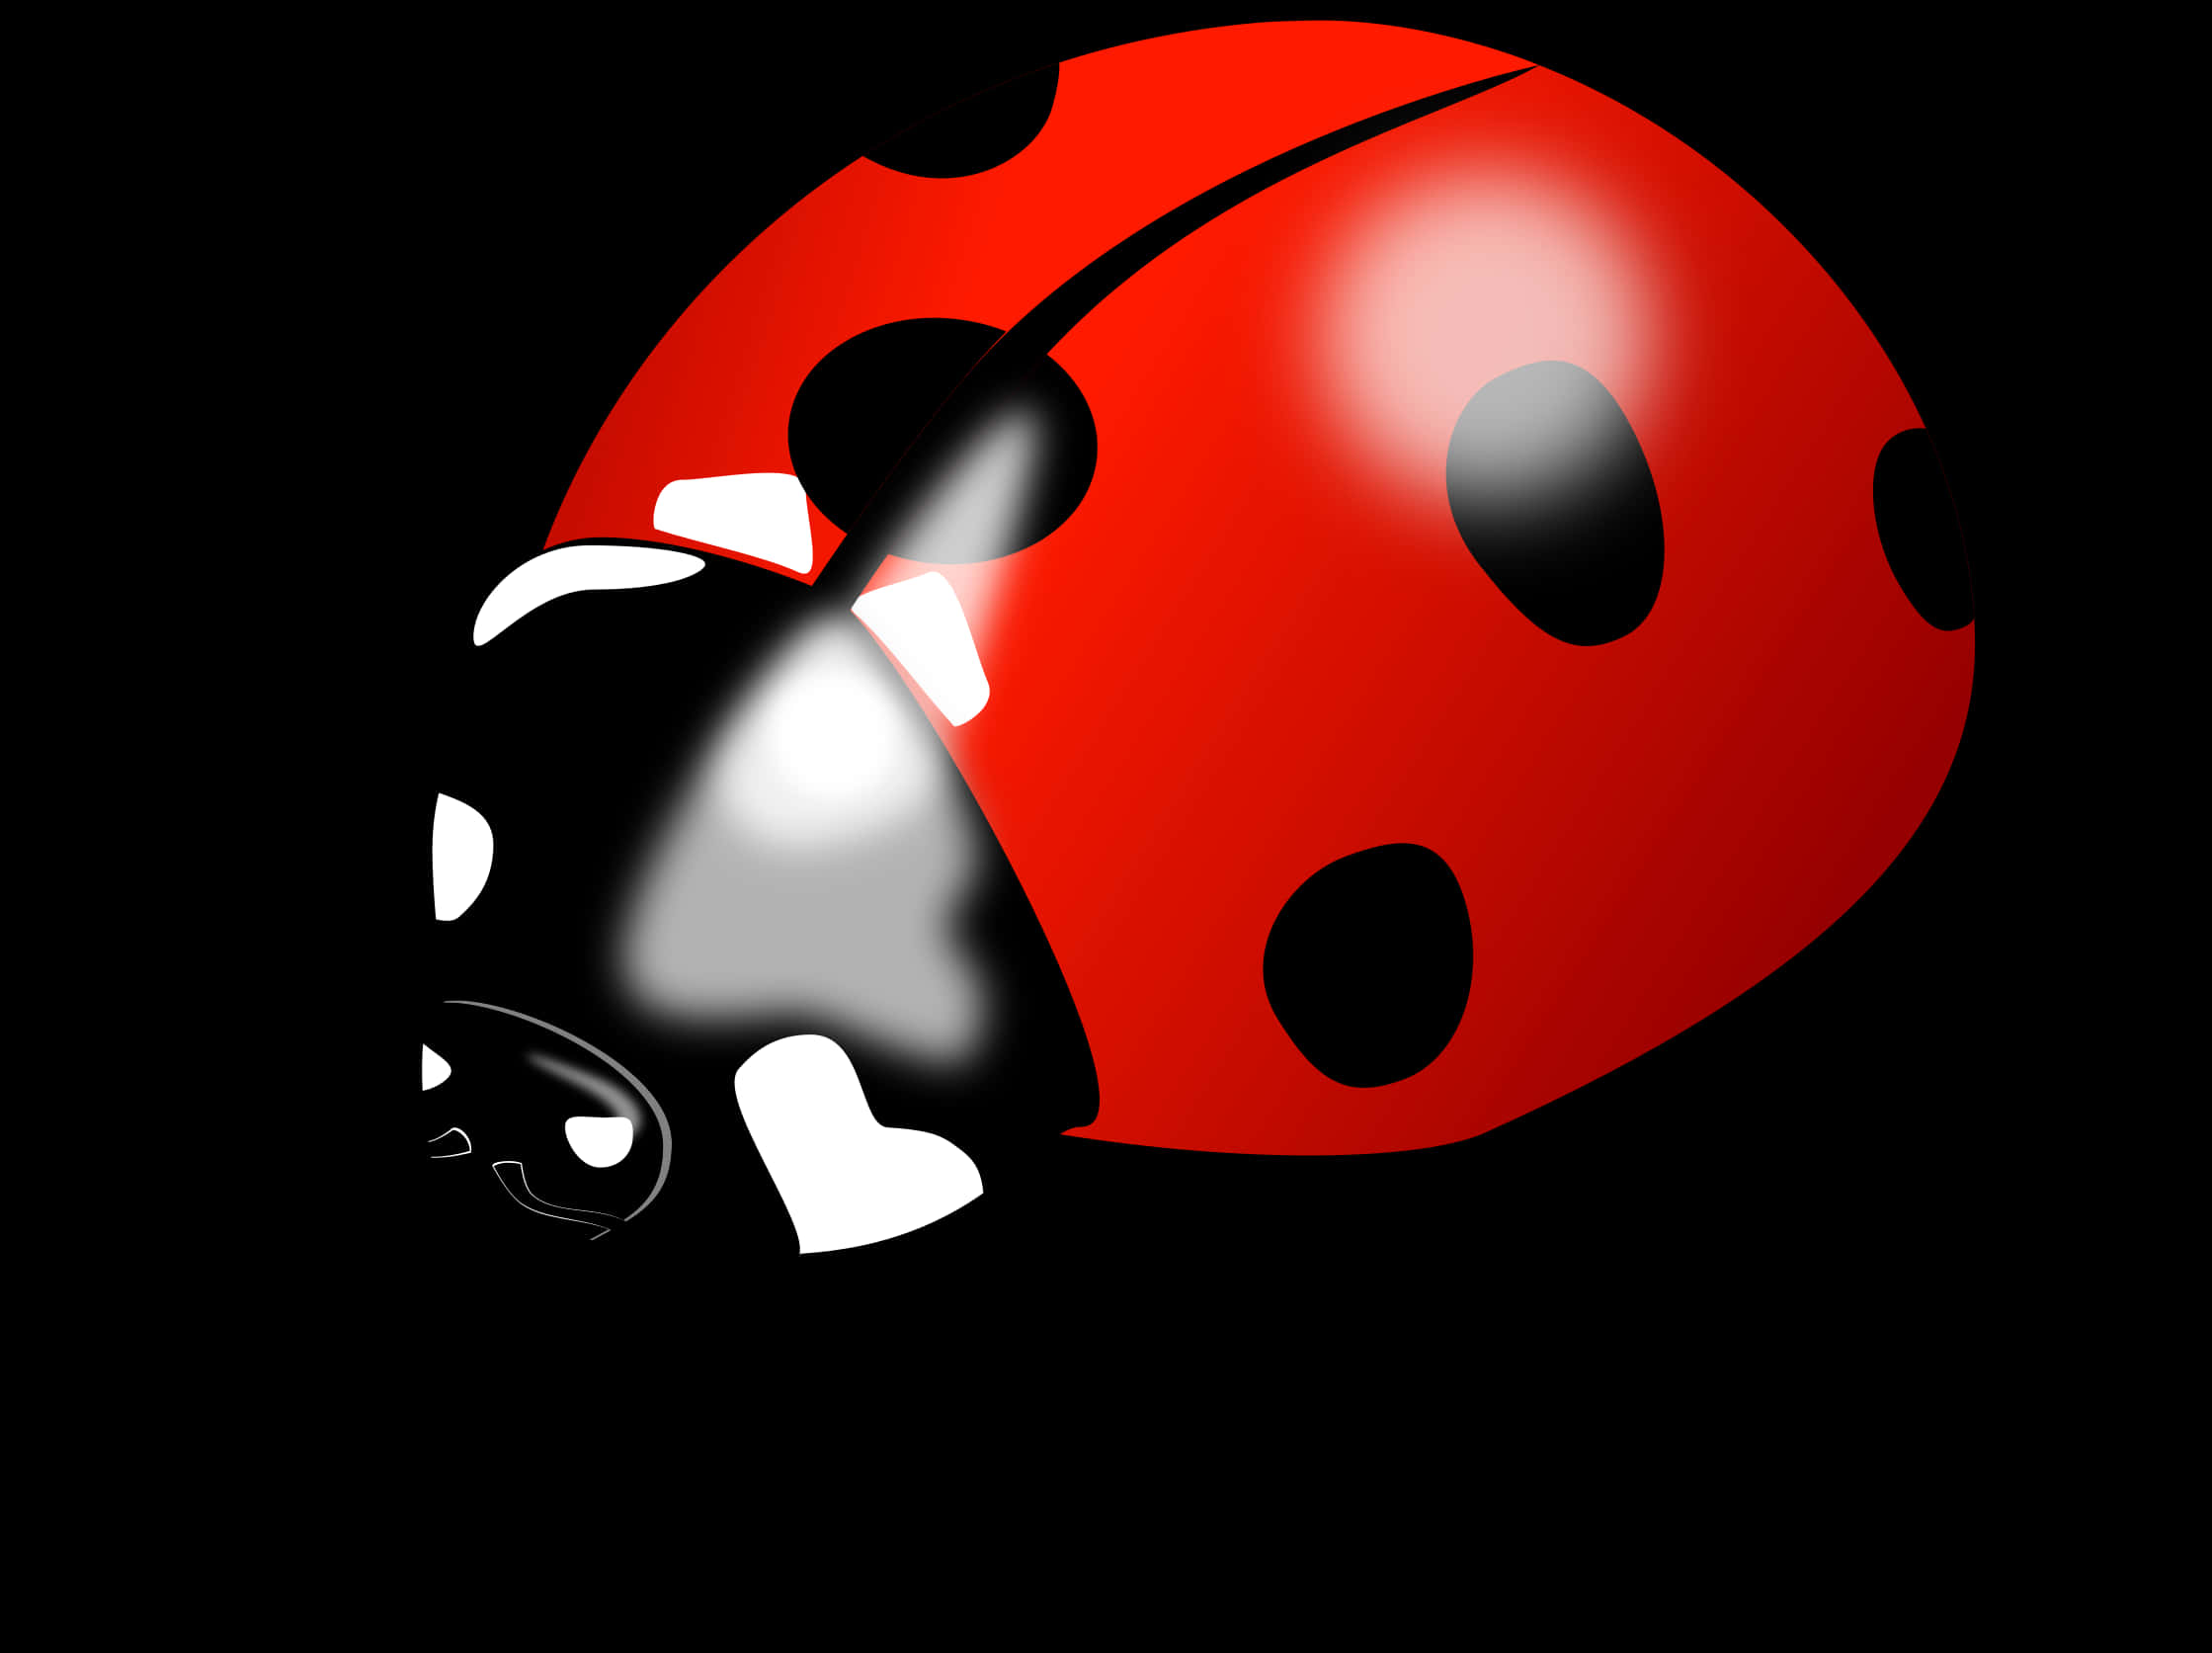 Red Ladybug Illustration PNG